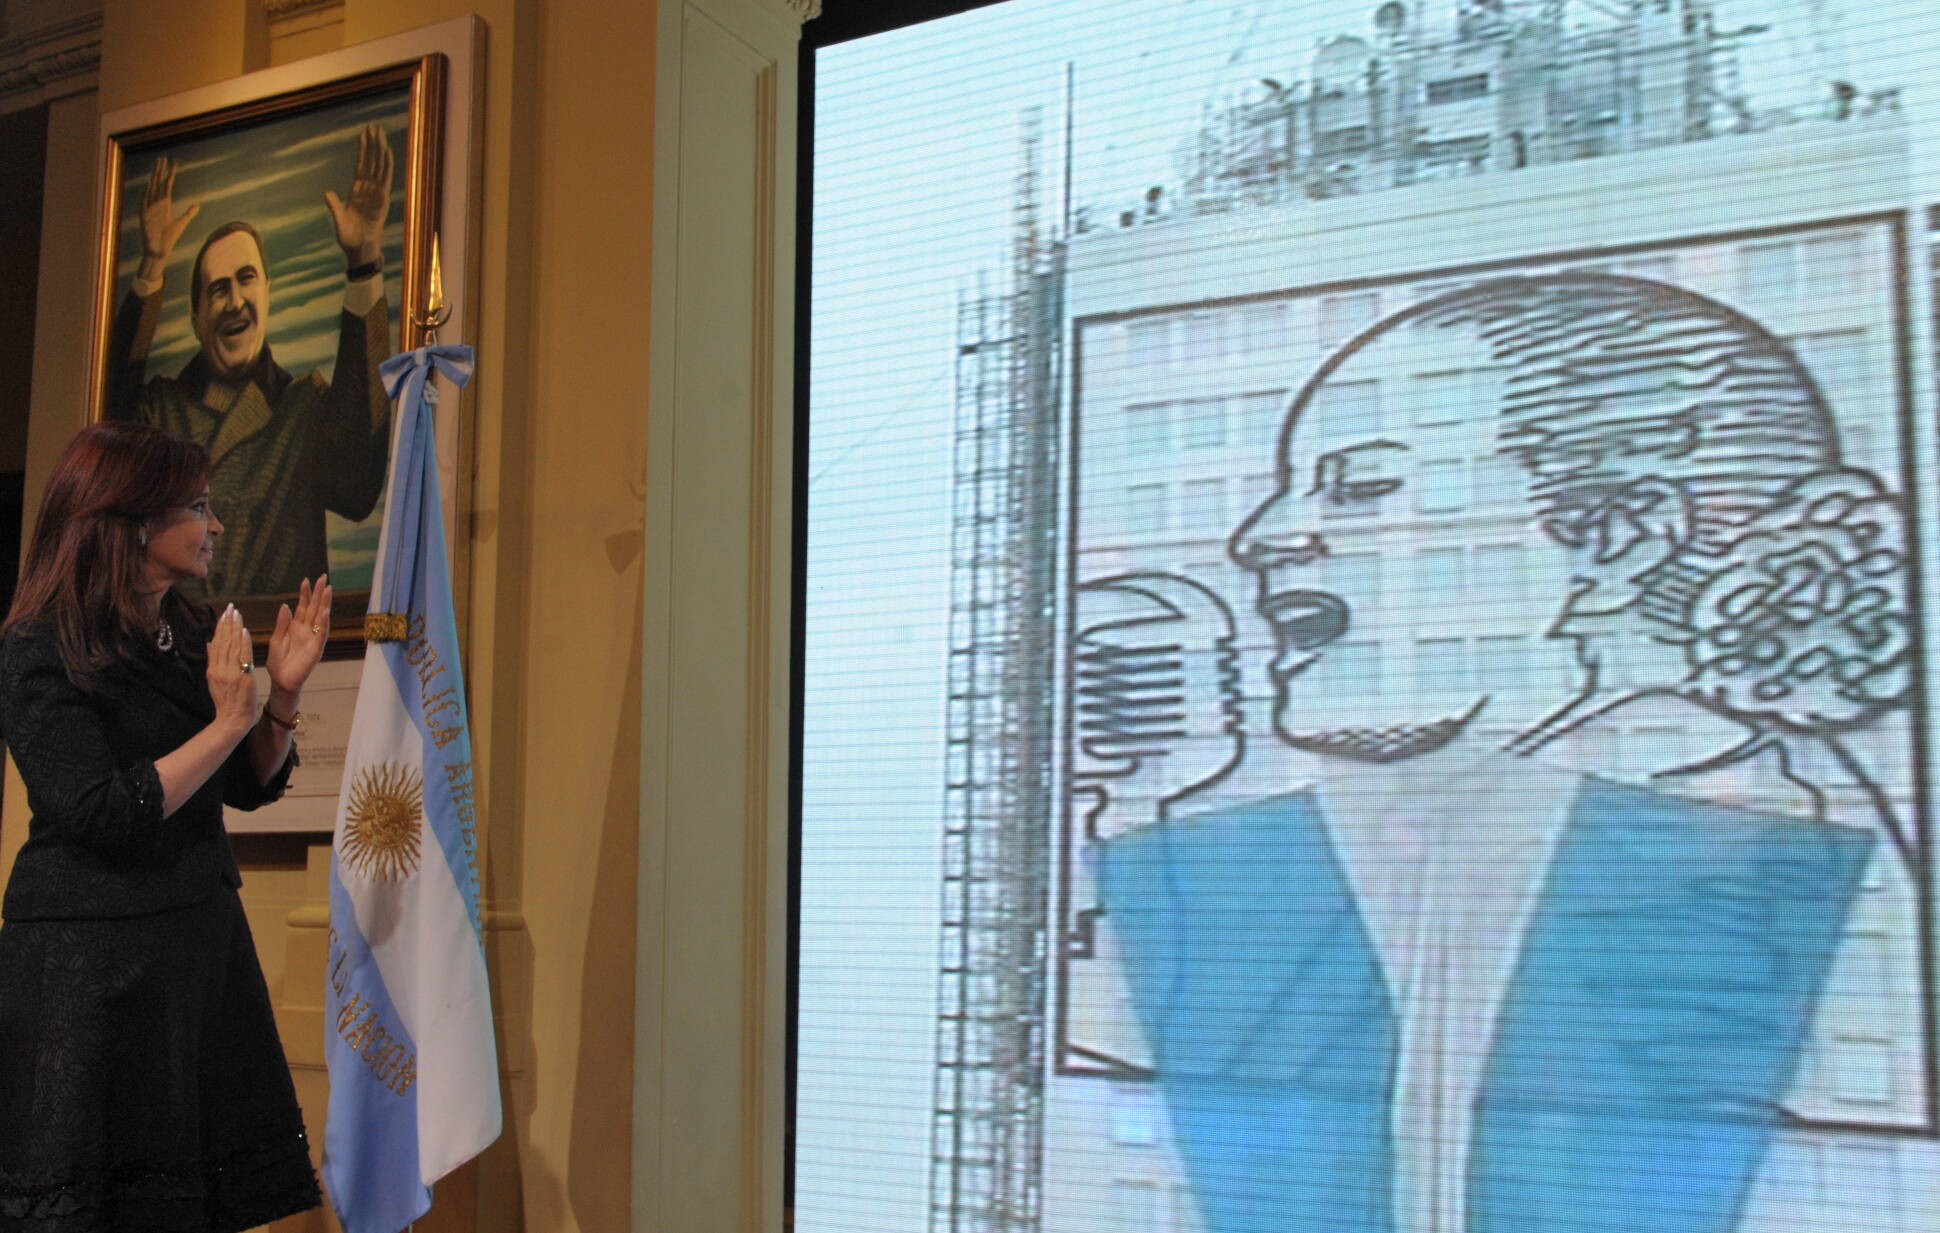 “En el mundo debemos recuperar el paradigma del equilibrio”, aseguró Cristina Fernández